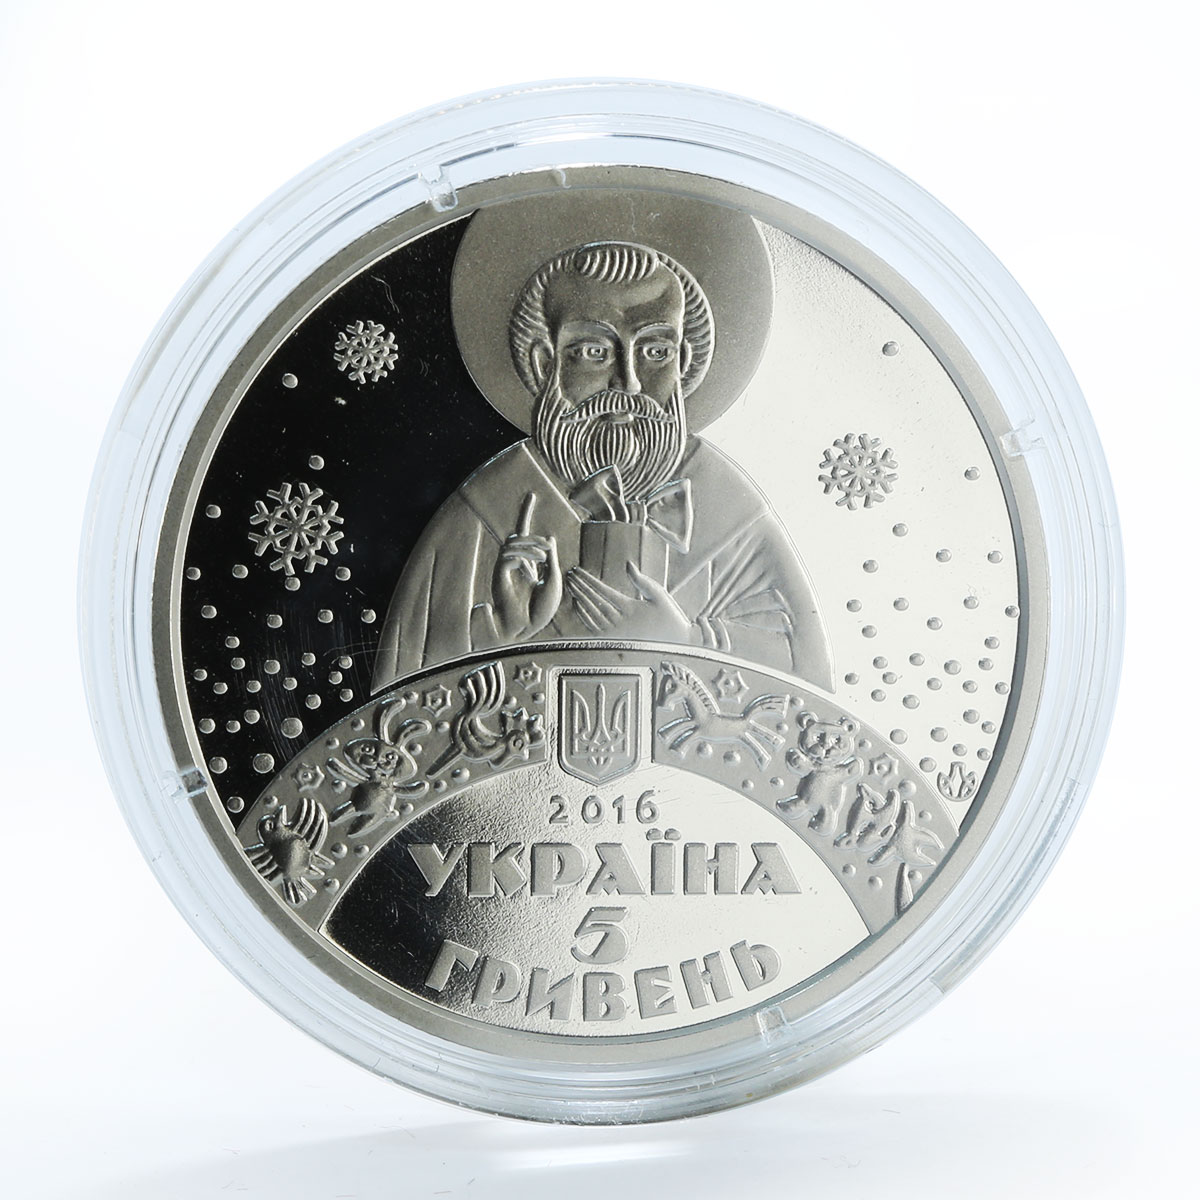 Ukraine 5 hryvnas St. Nicholas Day nickel silver coin 2016